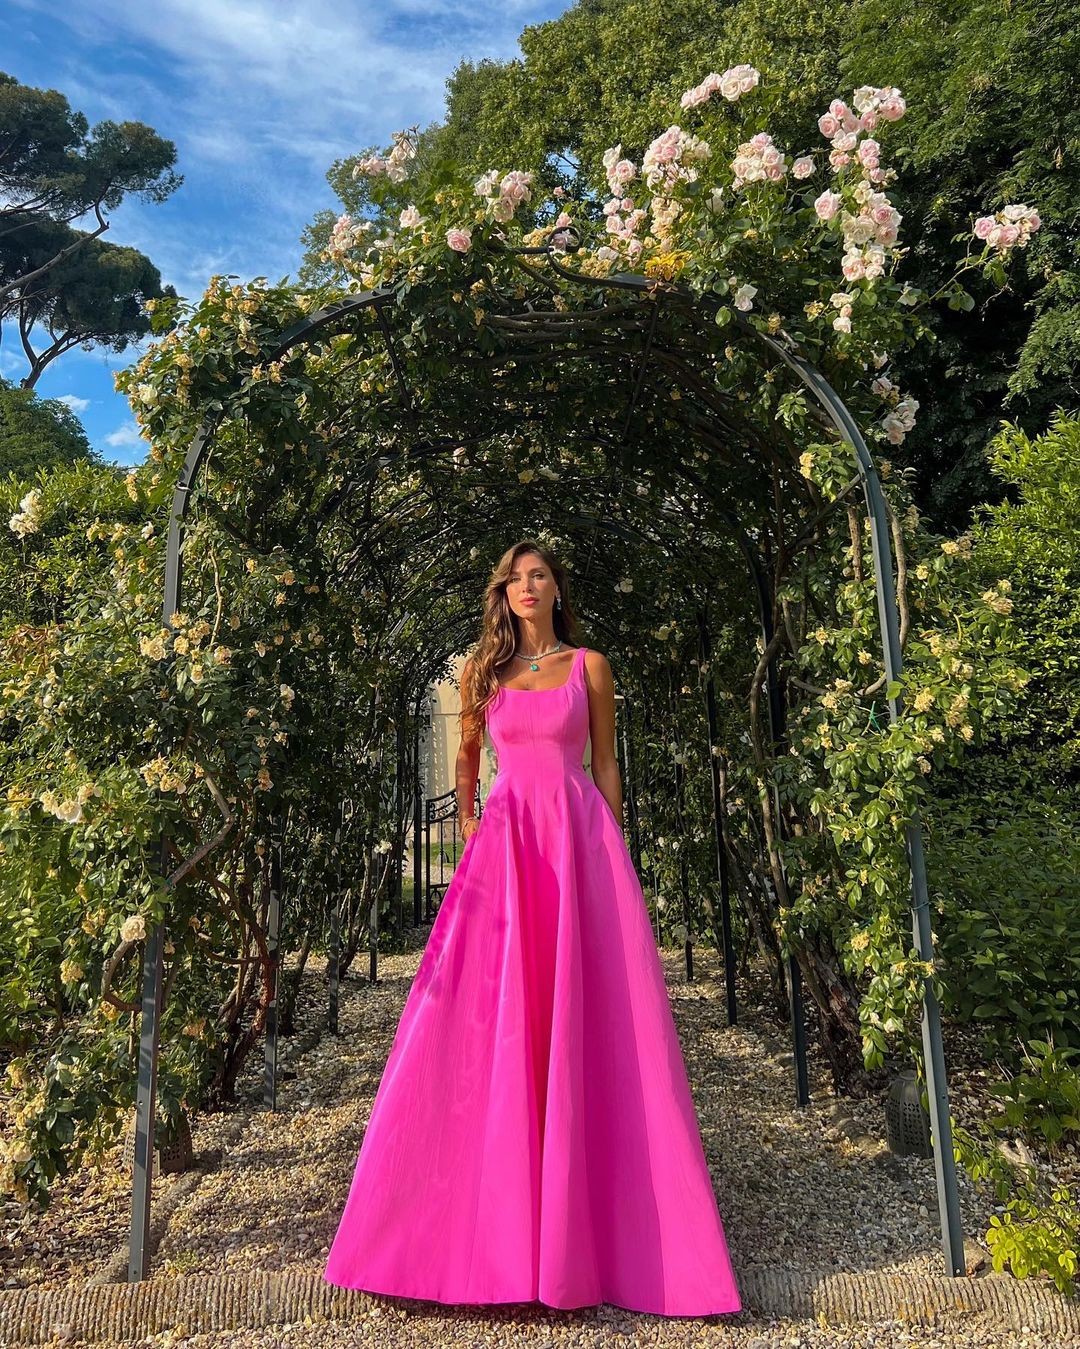 Nati Vozza escolheu um vestido pink (Foto: Reprodução/Instagram)